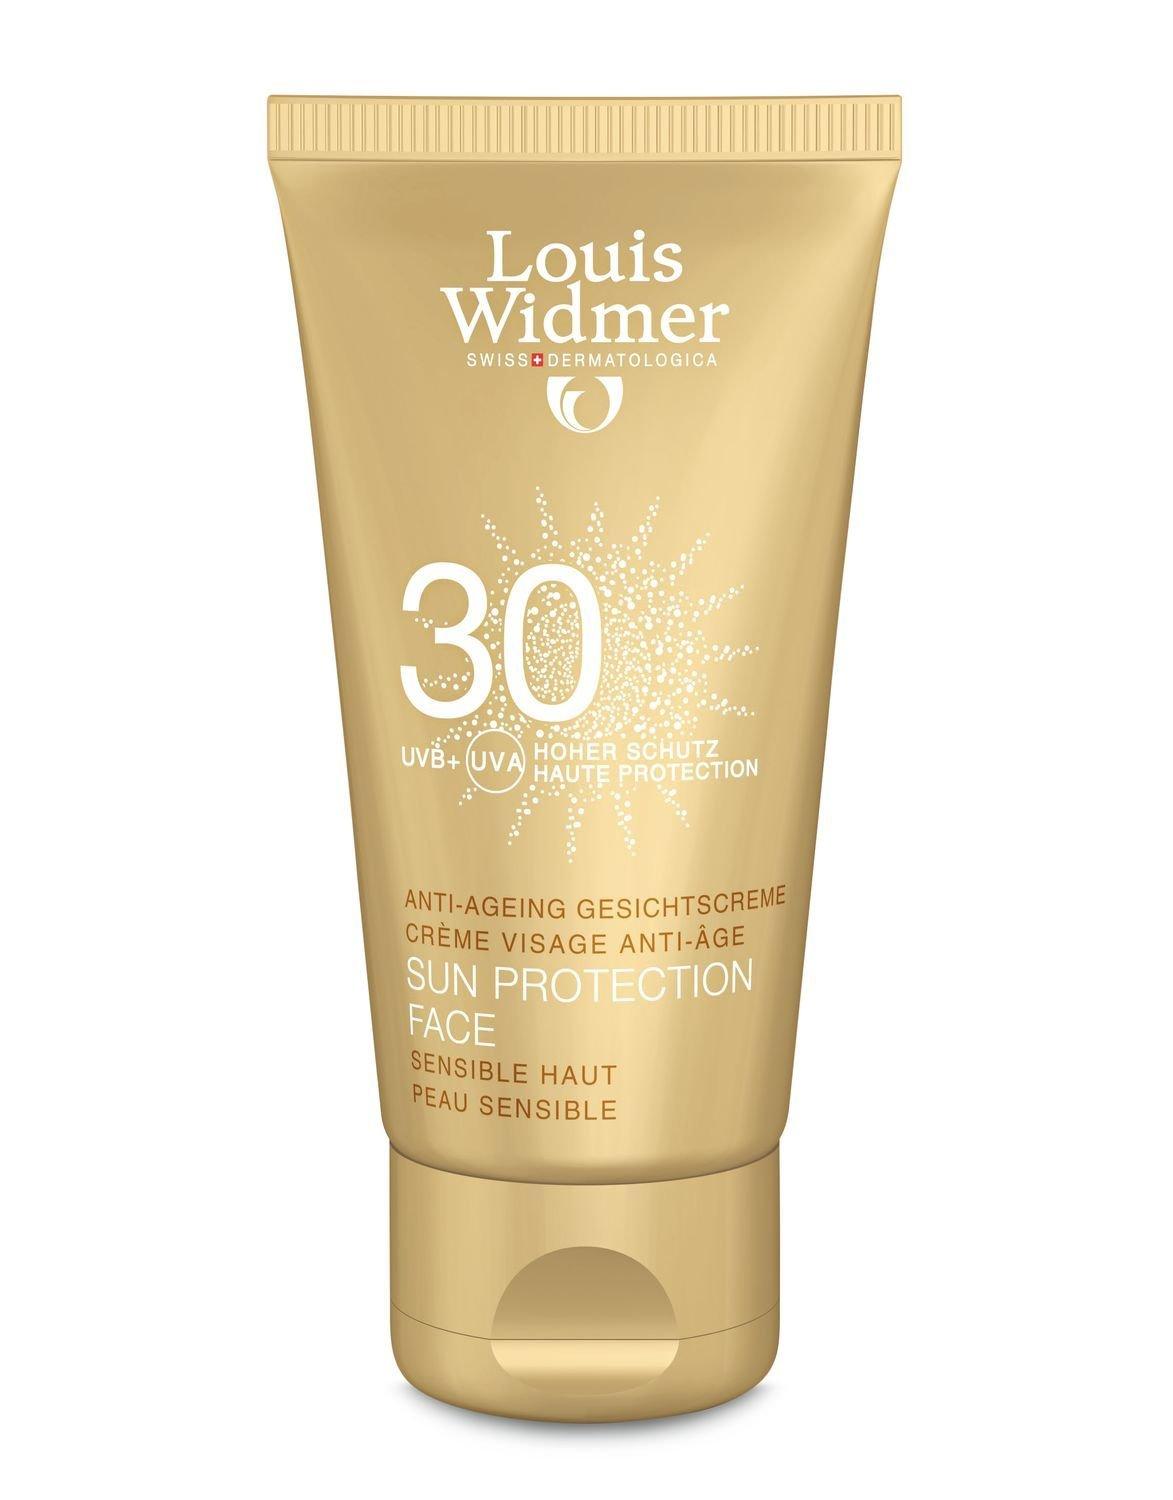 Louis Widmer  Sun Protection Face 30 unparfümiert  